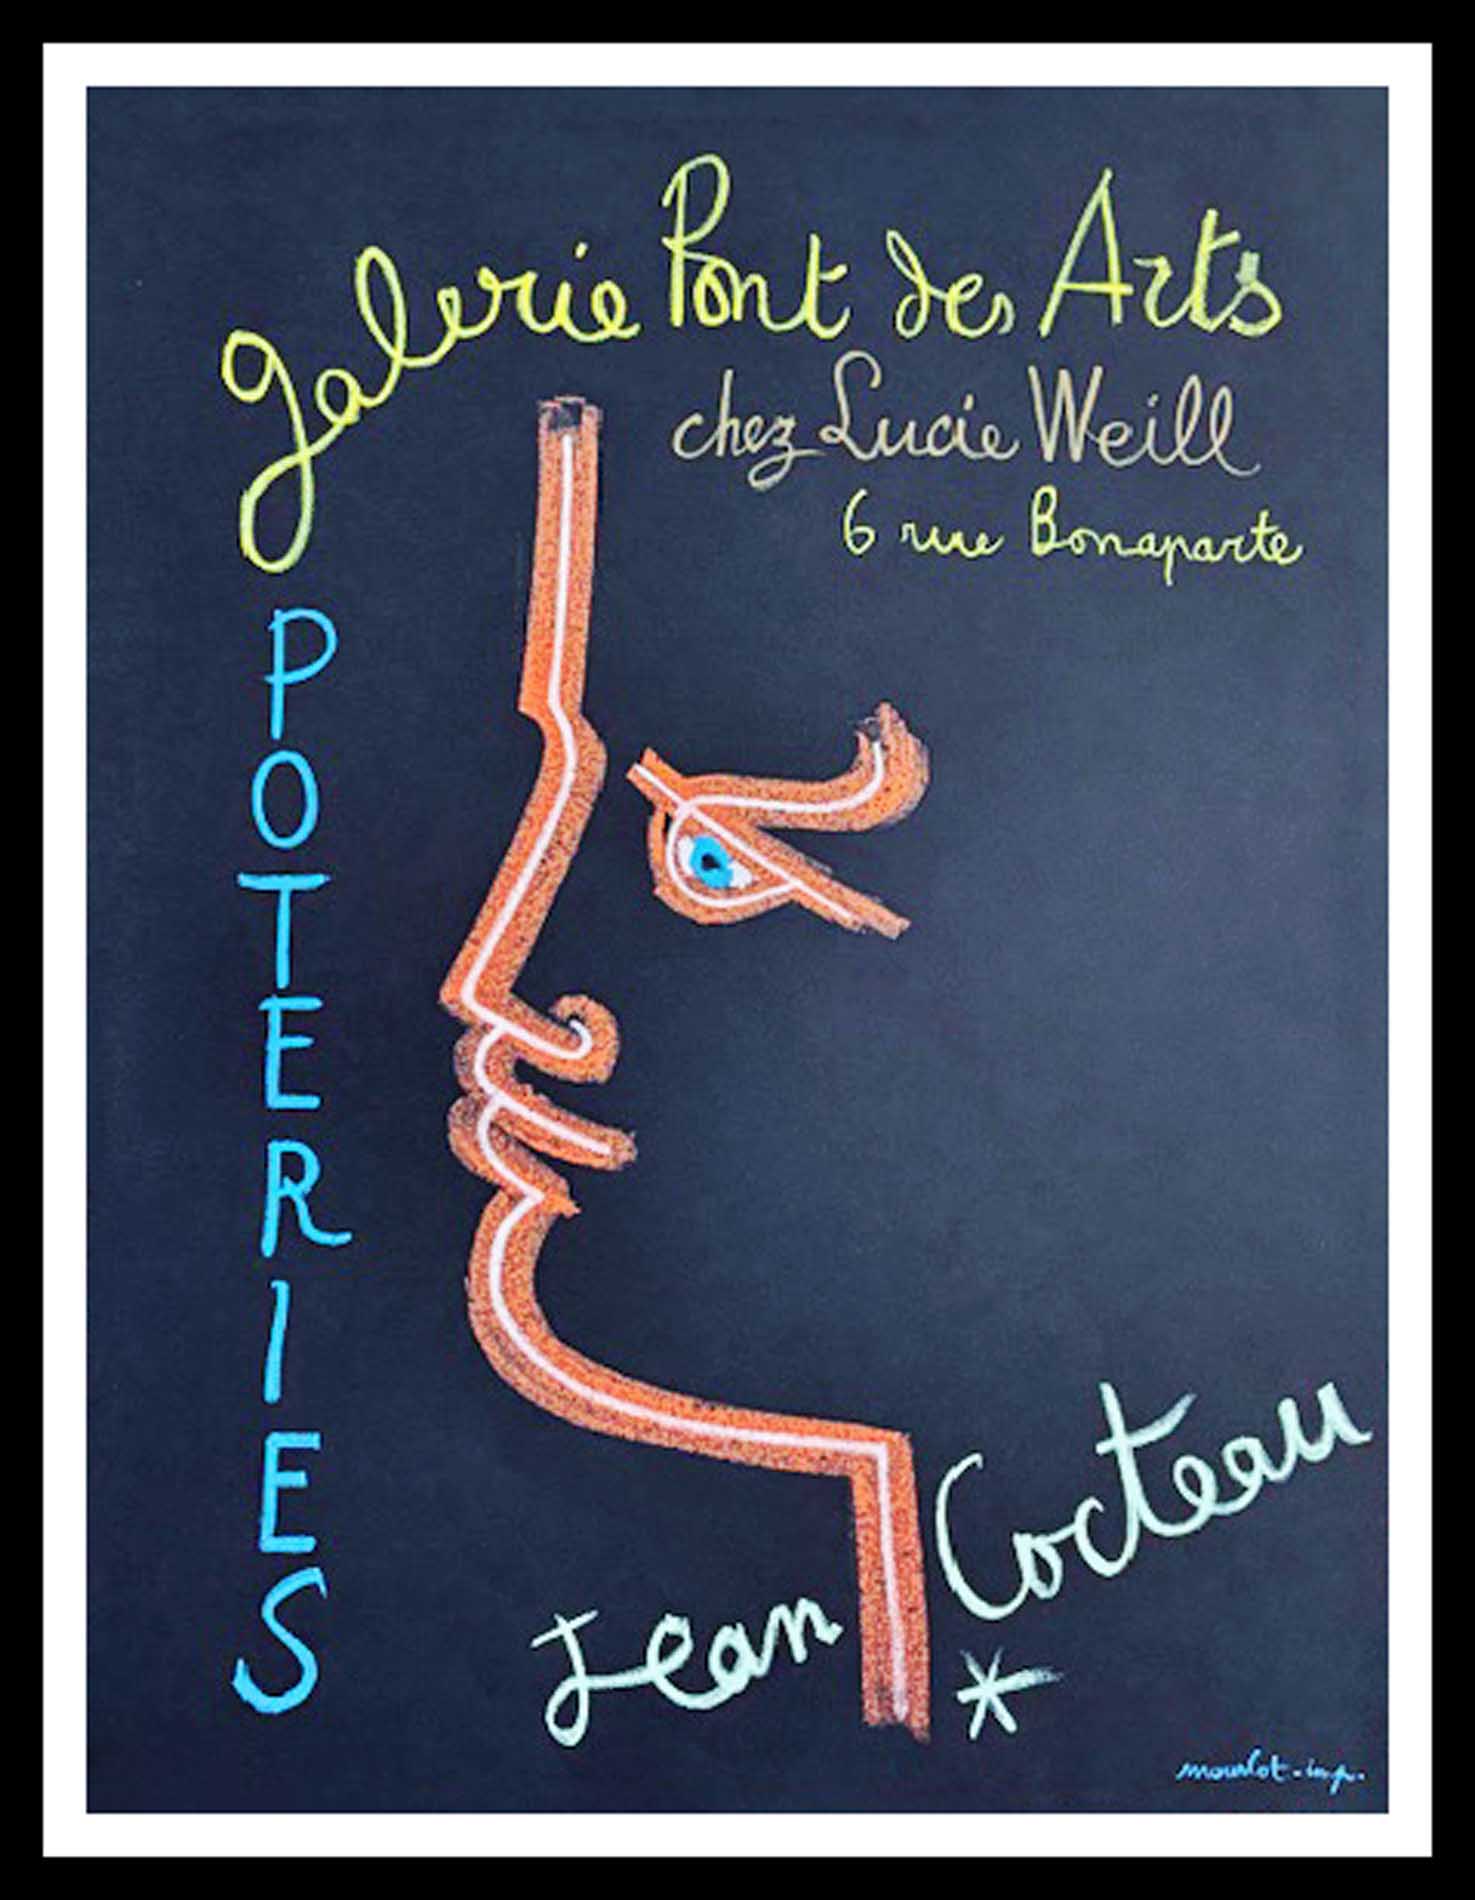 Galerie Pont des Arts chez Lucie WEILL 65.5 x 49 cm Jean Cocteau Poteries Imprimerie Mourlot circa 1950